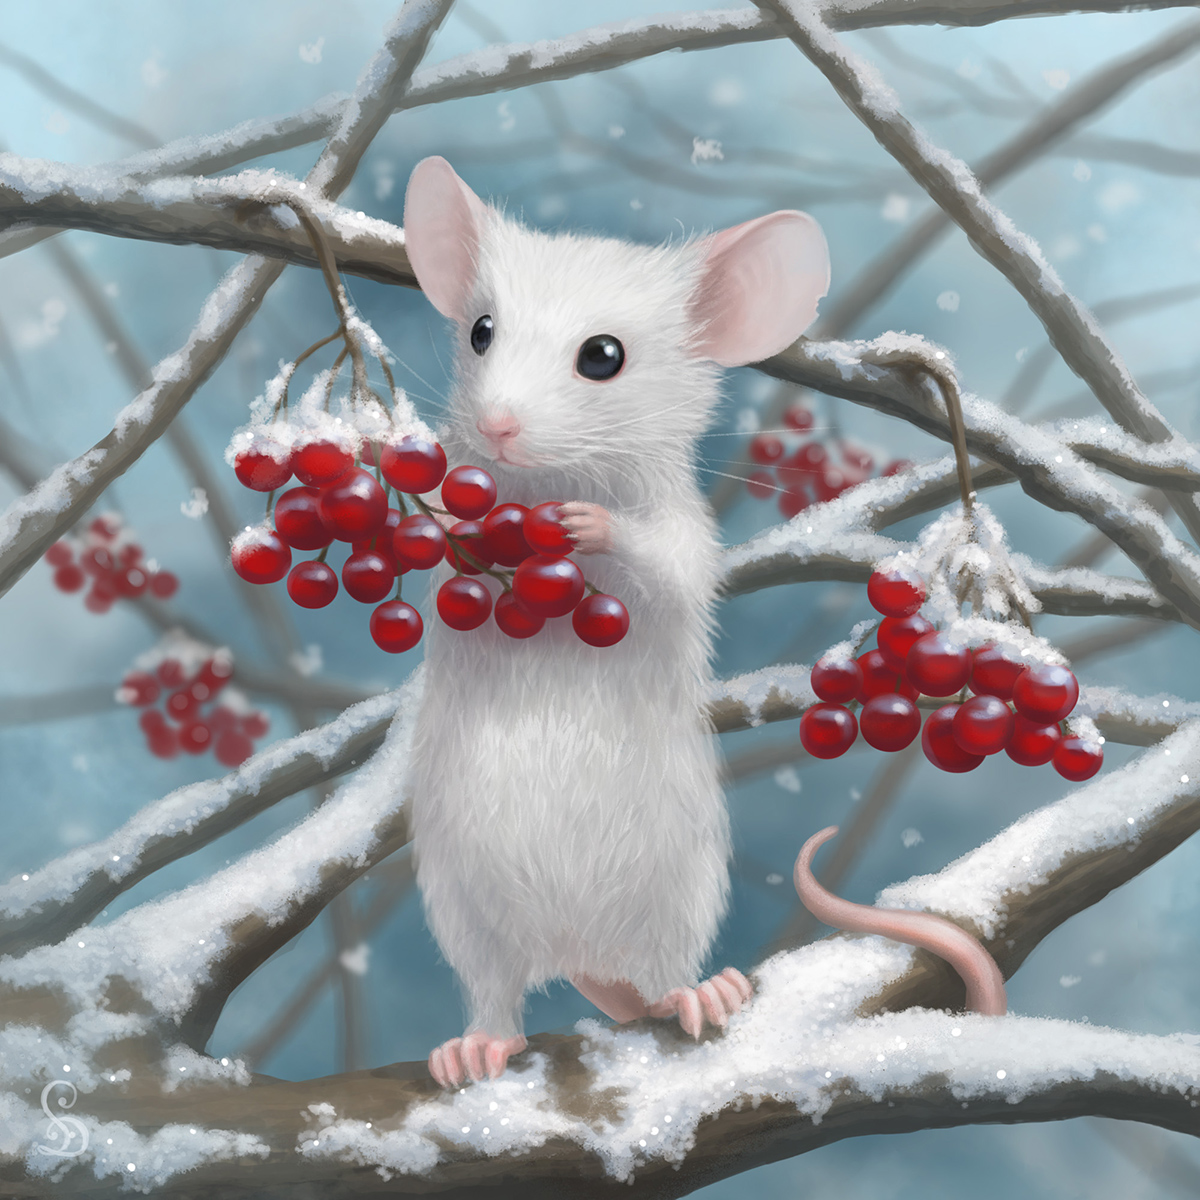 Тихо возится под снегом робкая мышь. Милые зверьки зимой. Мышь в снегу. Мышонок в снегу. Зимние зверюшки.